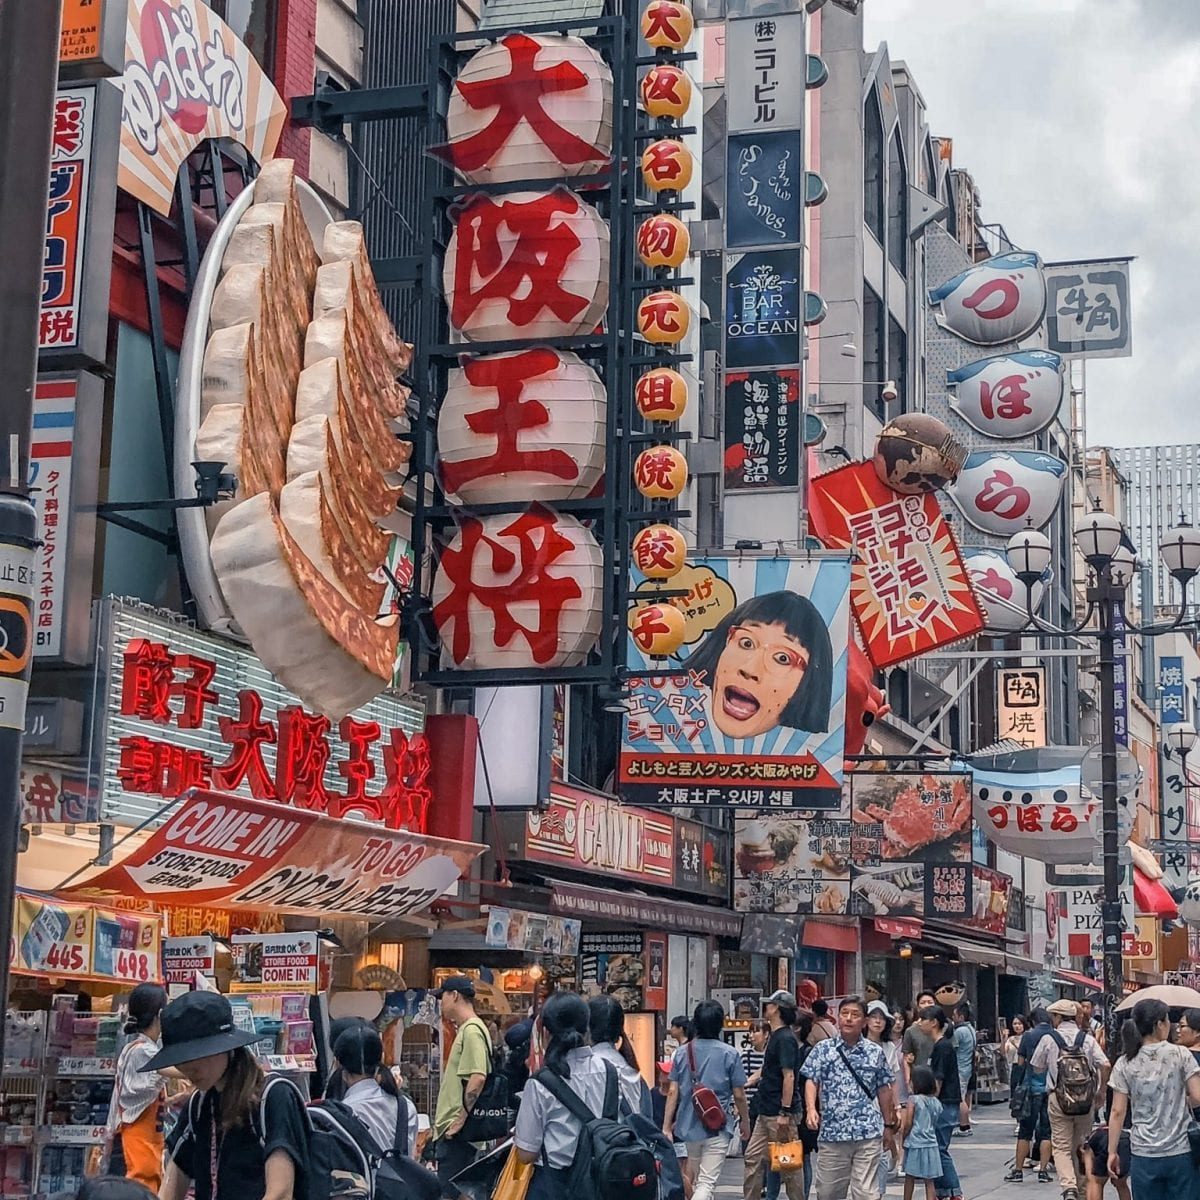 Osaka on a japan adventure tour